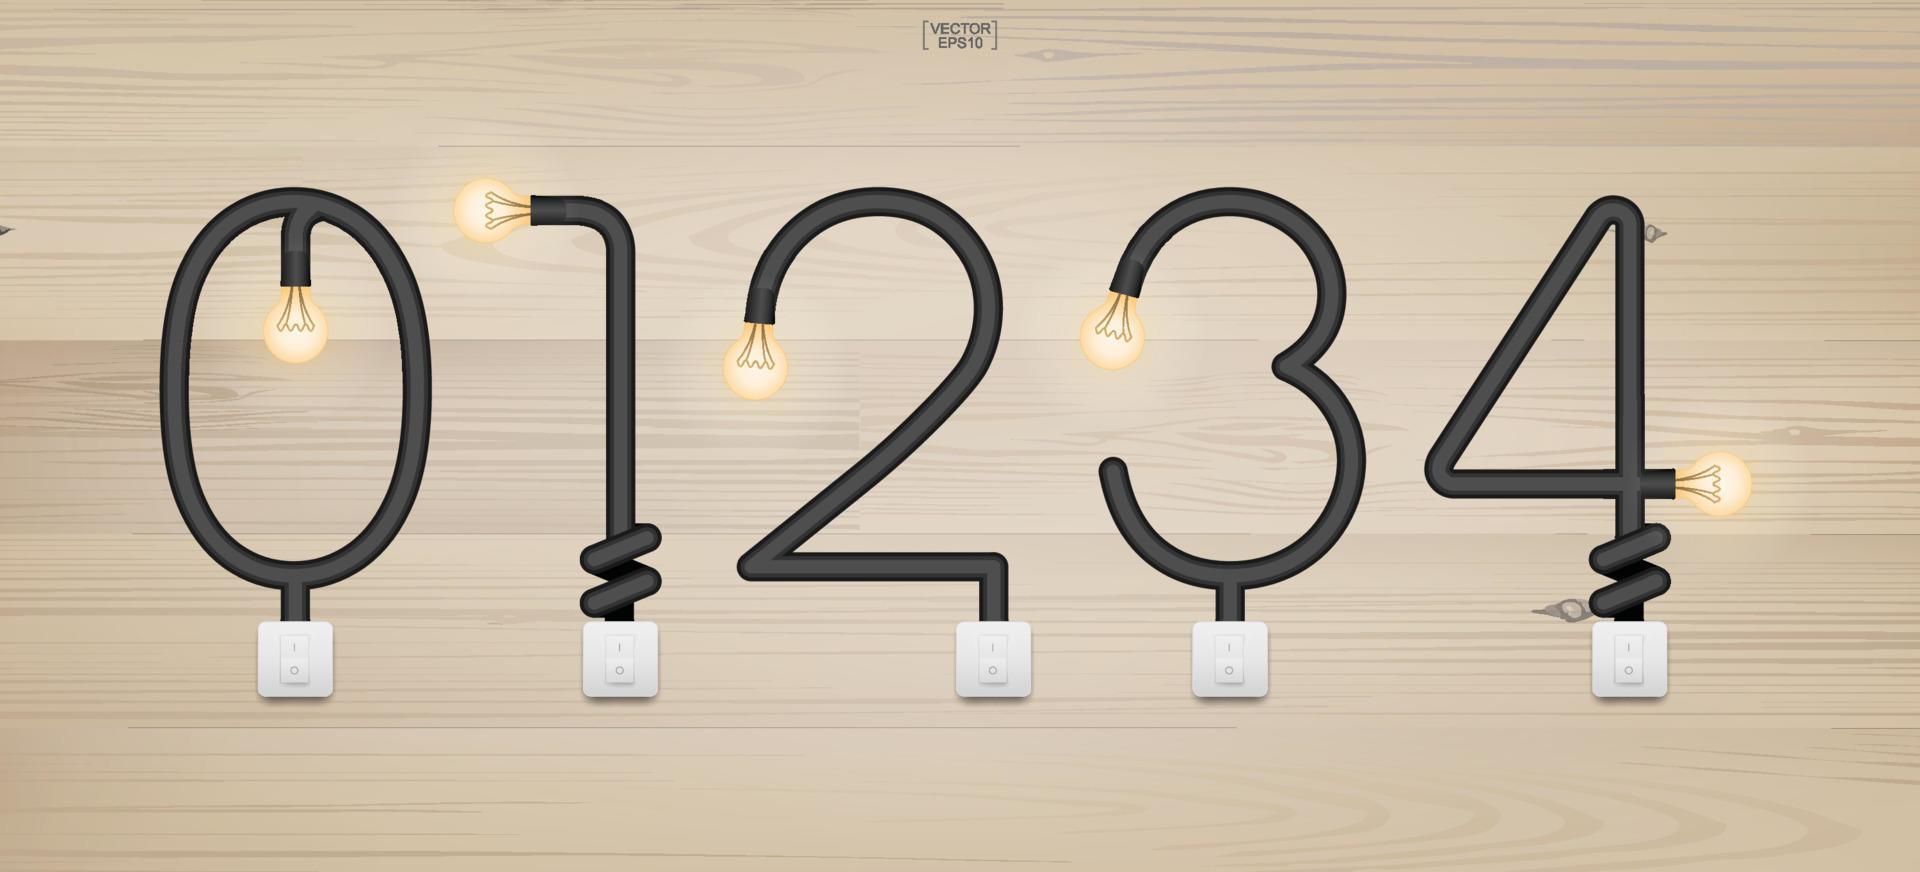 ensemble d'alphabet et de chiffres de loft. alphabet abstrait d'ampoule et interrupteur d'éclairage sur fond de bois. vecteur. vecteur